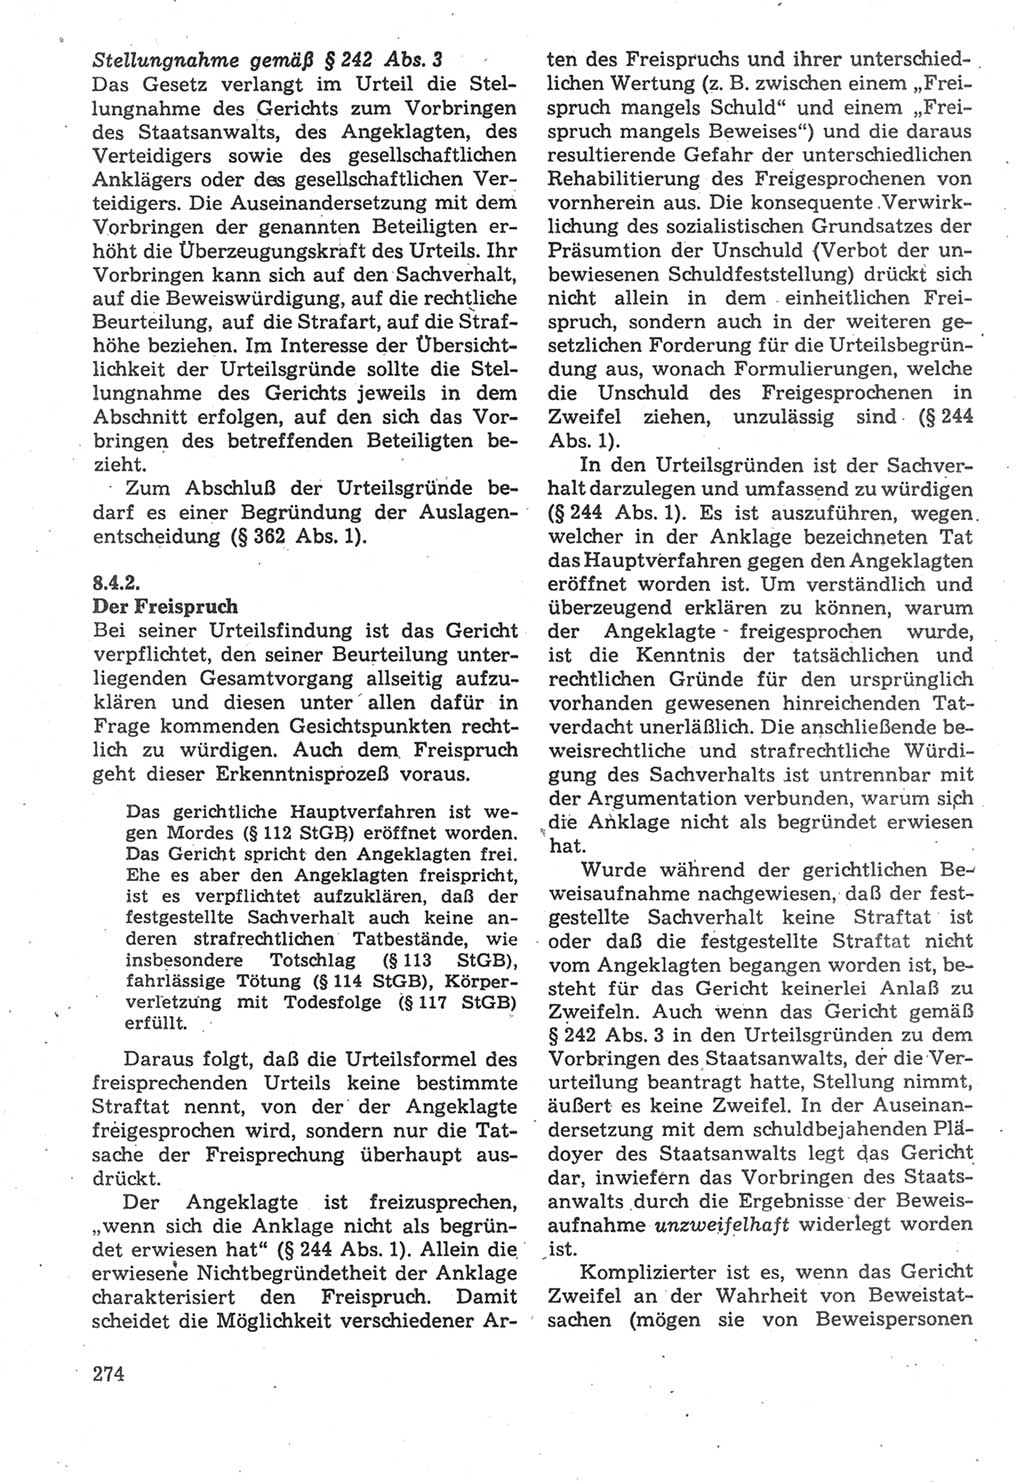 Strafverfahrensrecht [Deutsche Demokratische Republik (DDR)], Lehrbuch 1987, Seite 274 (Strafverf.-R. DDR Lb. 1987, S. 274)